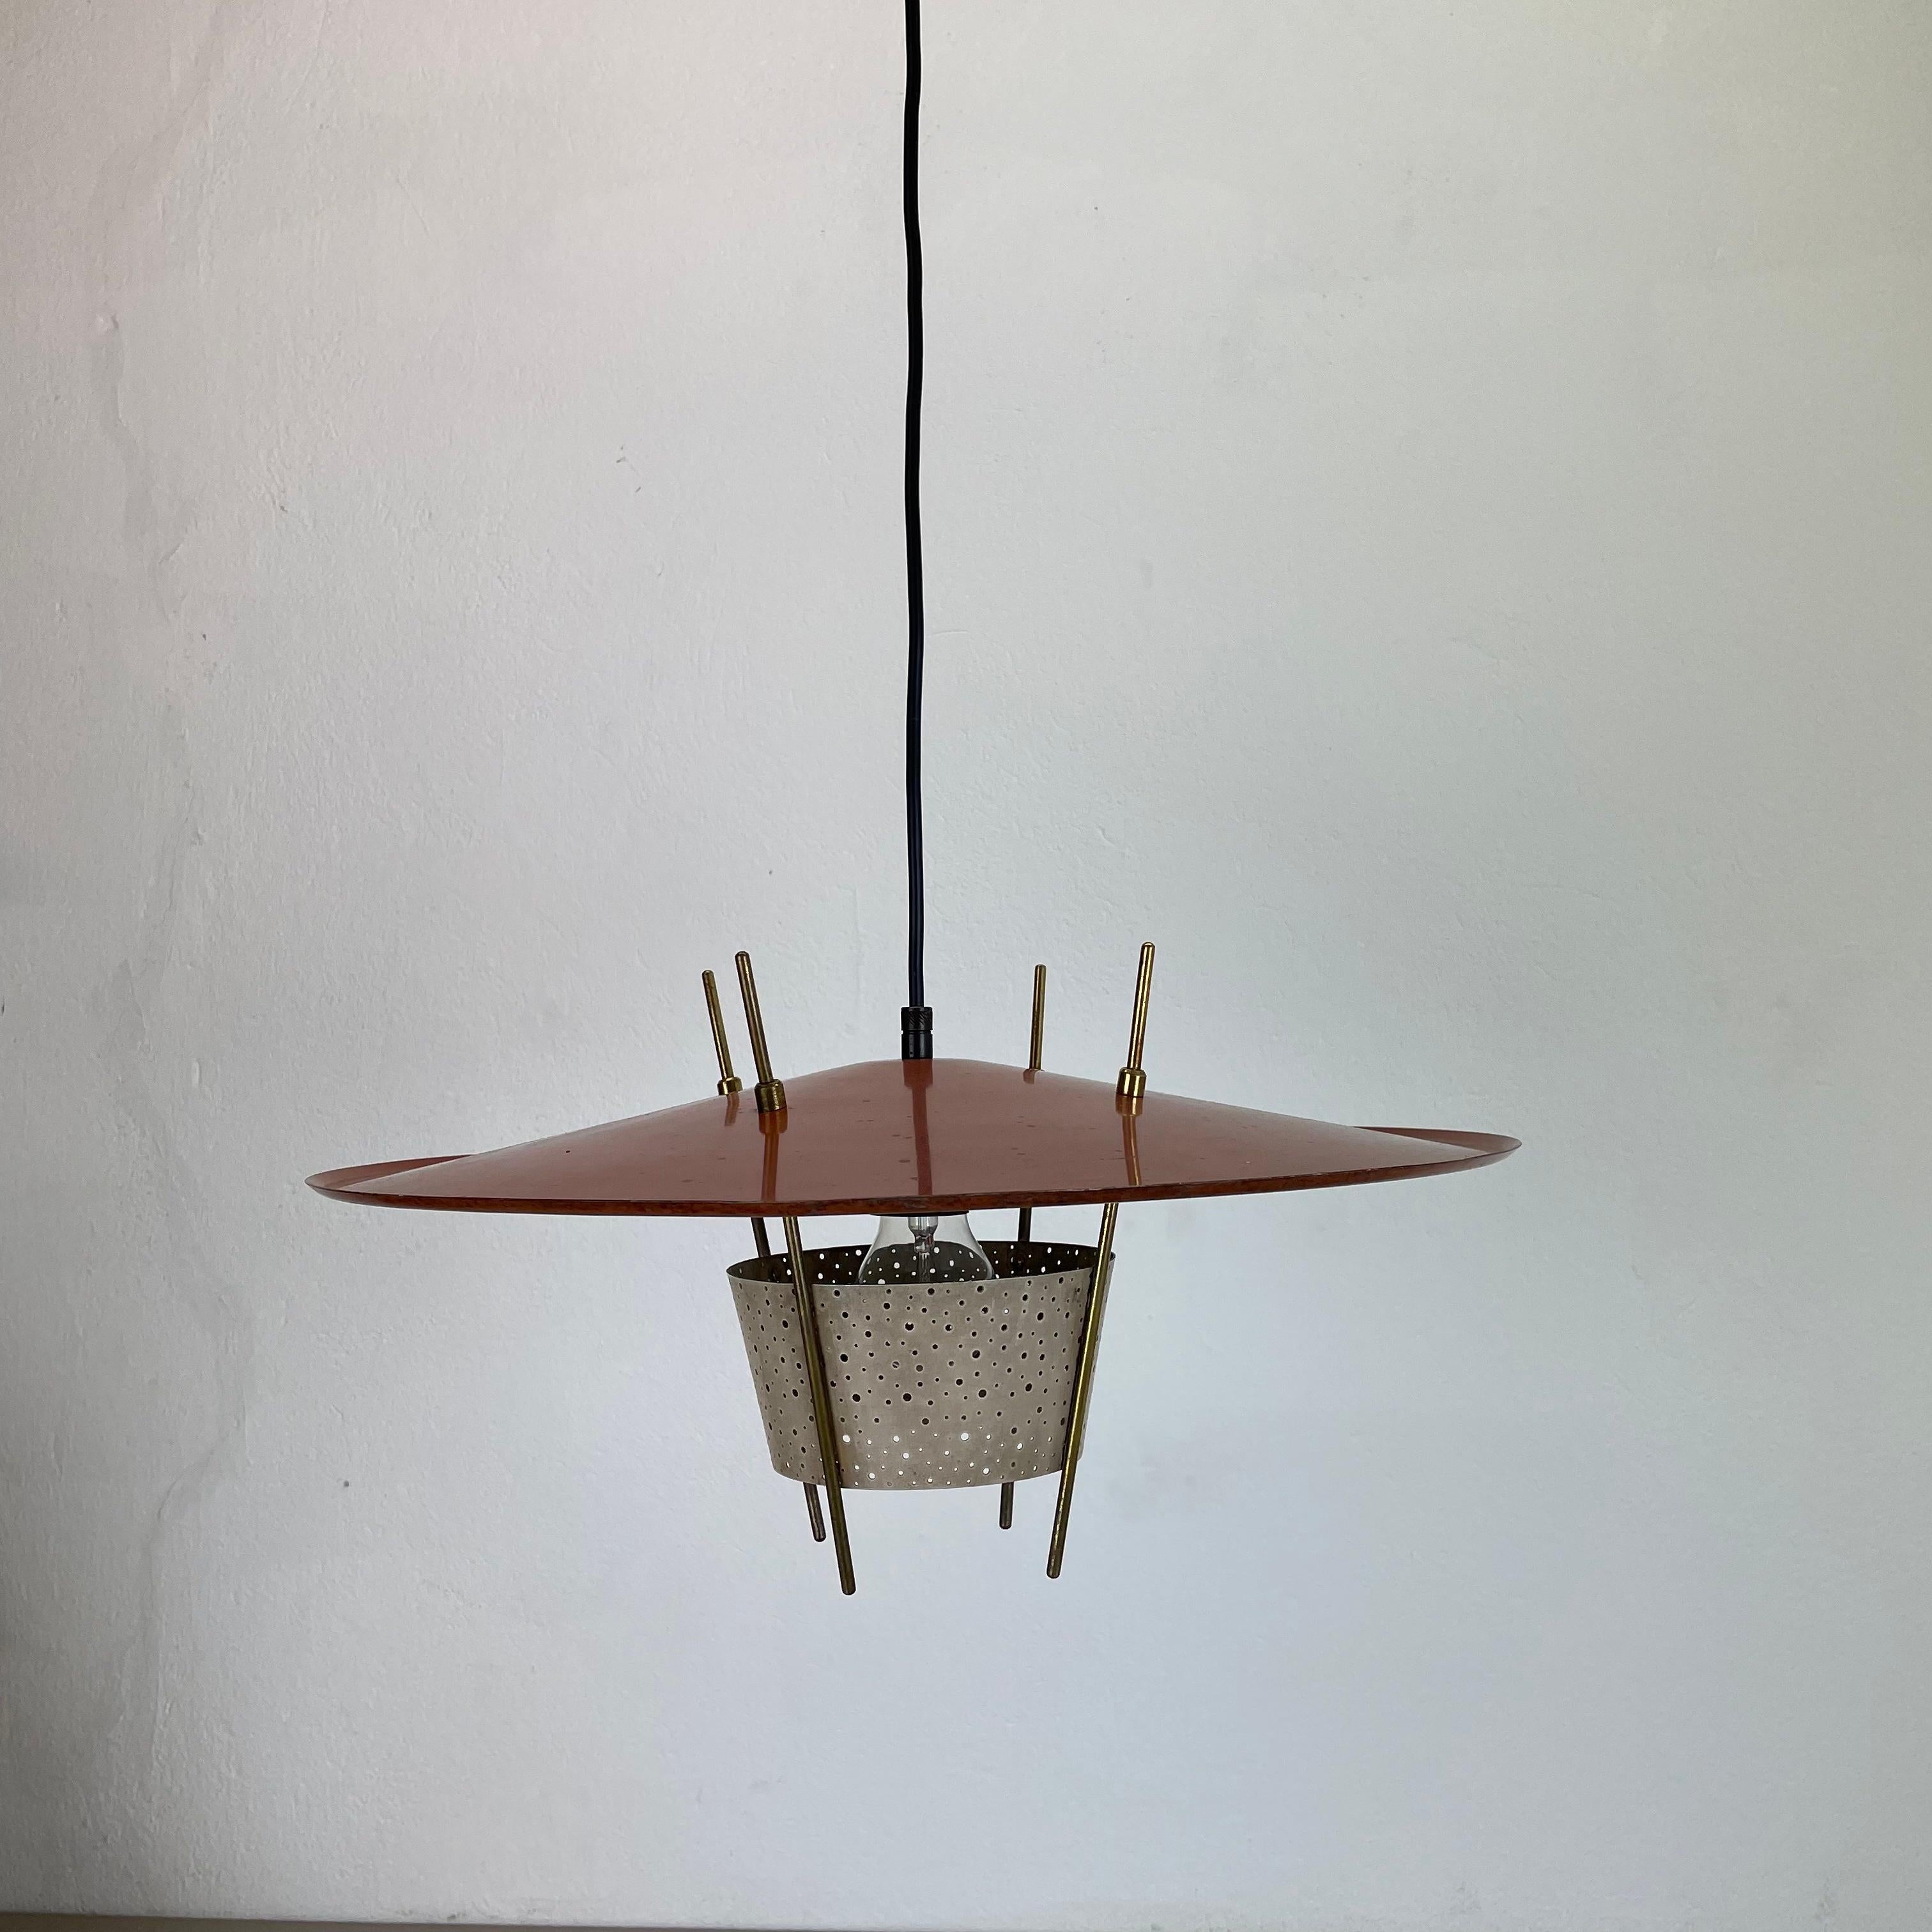 Modernist Stilnovo Style Hanging Light by Ernest Igl for Hillebrand Germany 1960 For Sale 6